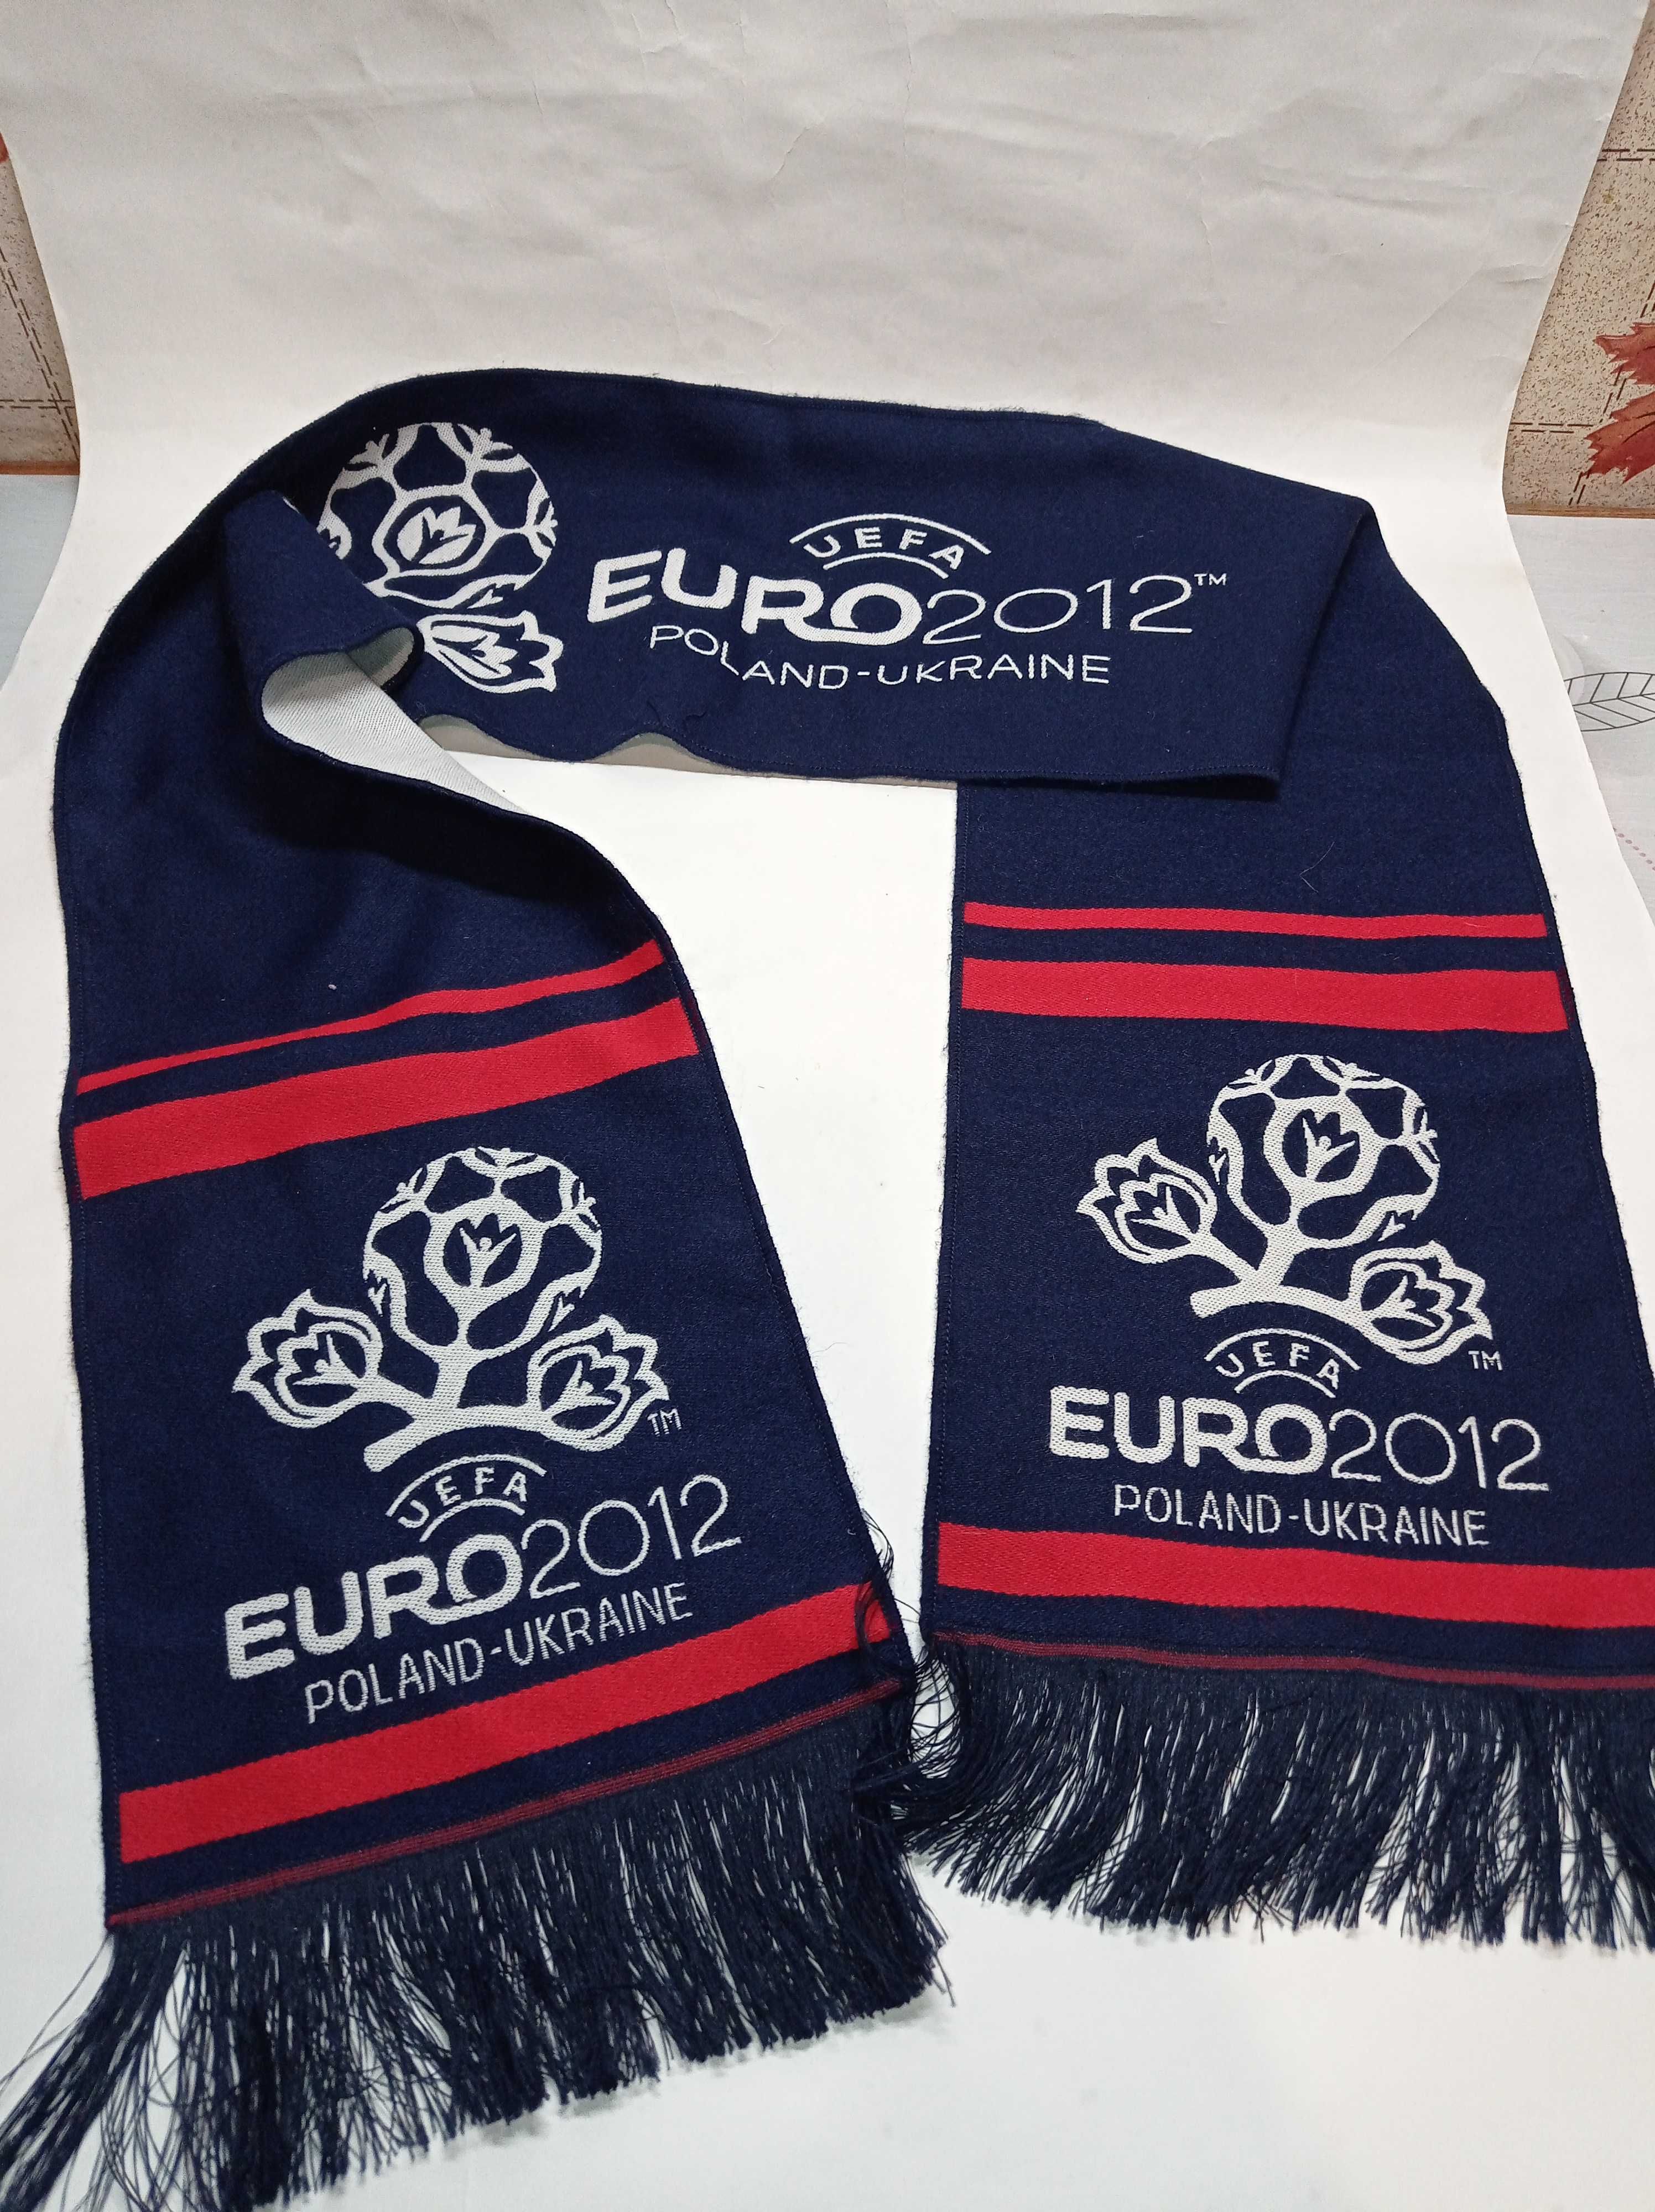 Фан шарф Евро 2012 футбол Euro 2013